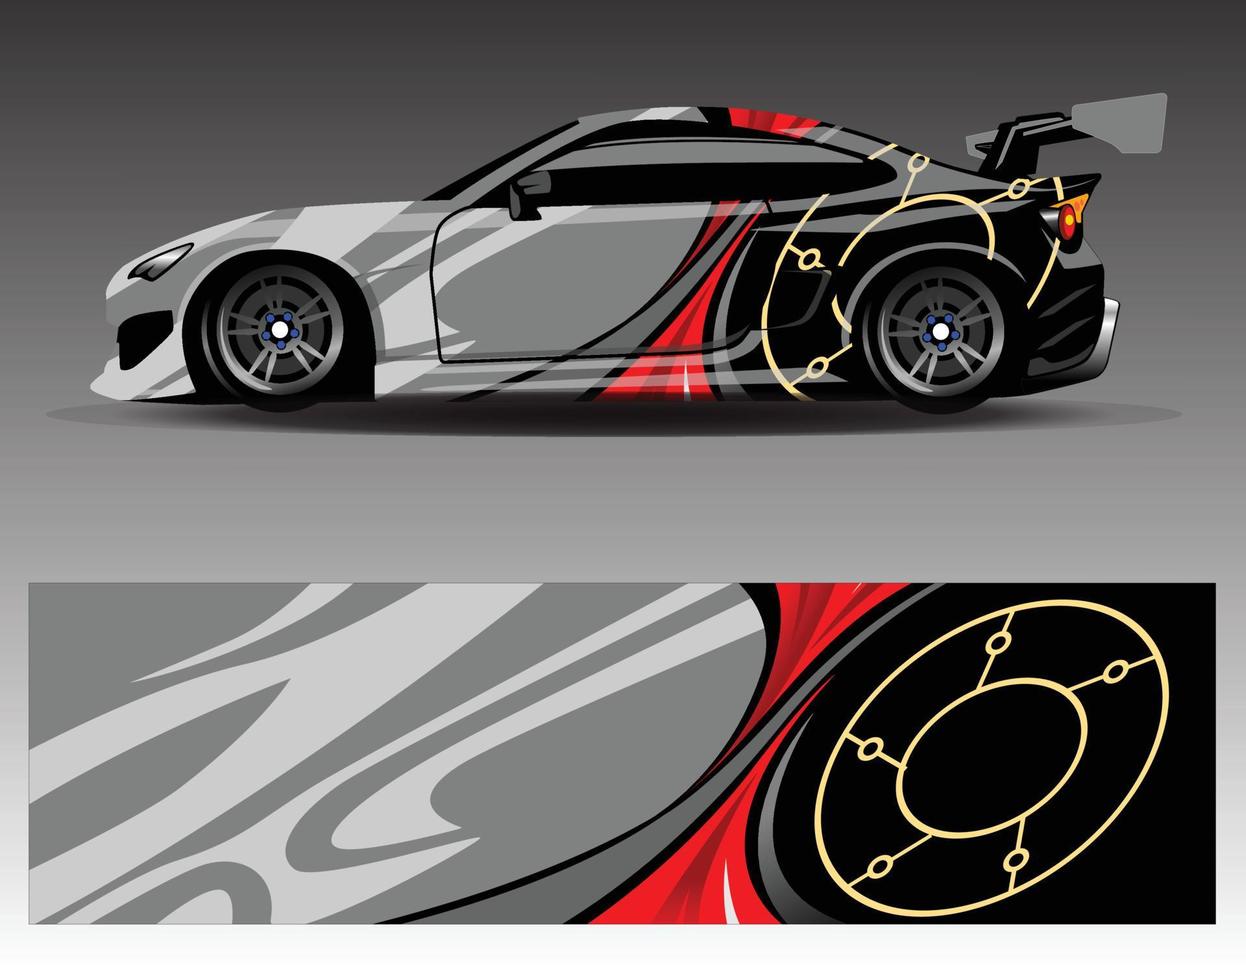 etiqueta engomada del vinilo del abrigo del vector del gráfico de la etiqueta del coche. diseños de rayas abstractas gráficas para vehículos de carreras